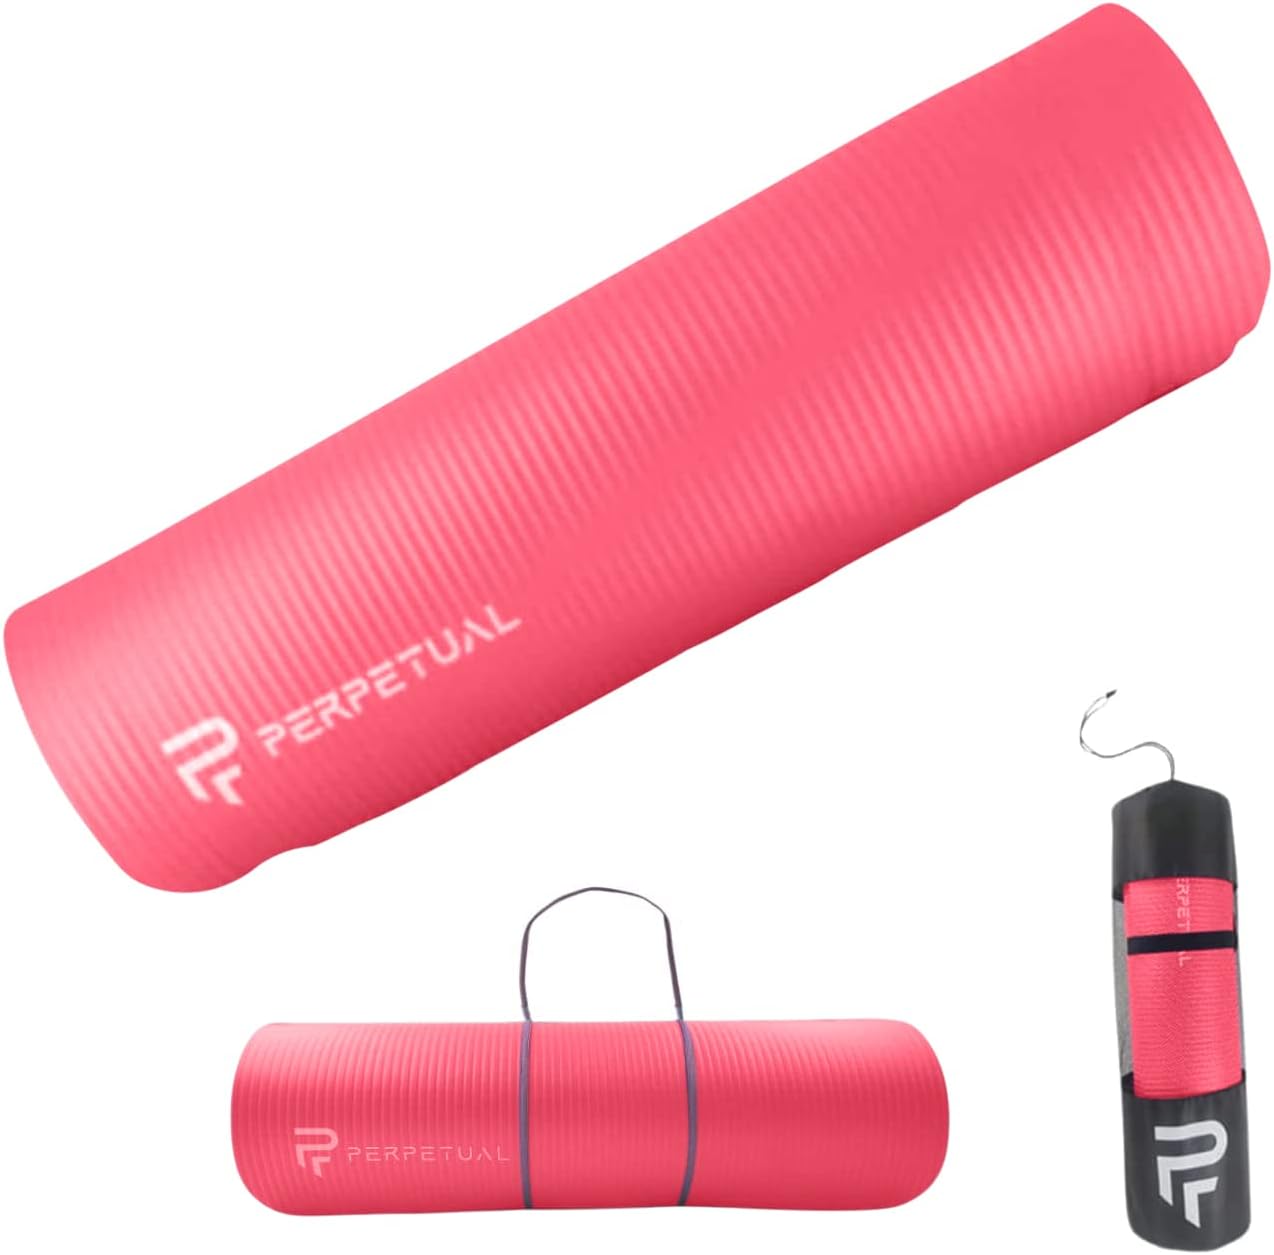 Esterilla De Yoga Y Pilates Antideslizante De 10mm Perpetual Con Correa Y Bolsa De Transporte - rojo - 